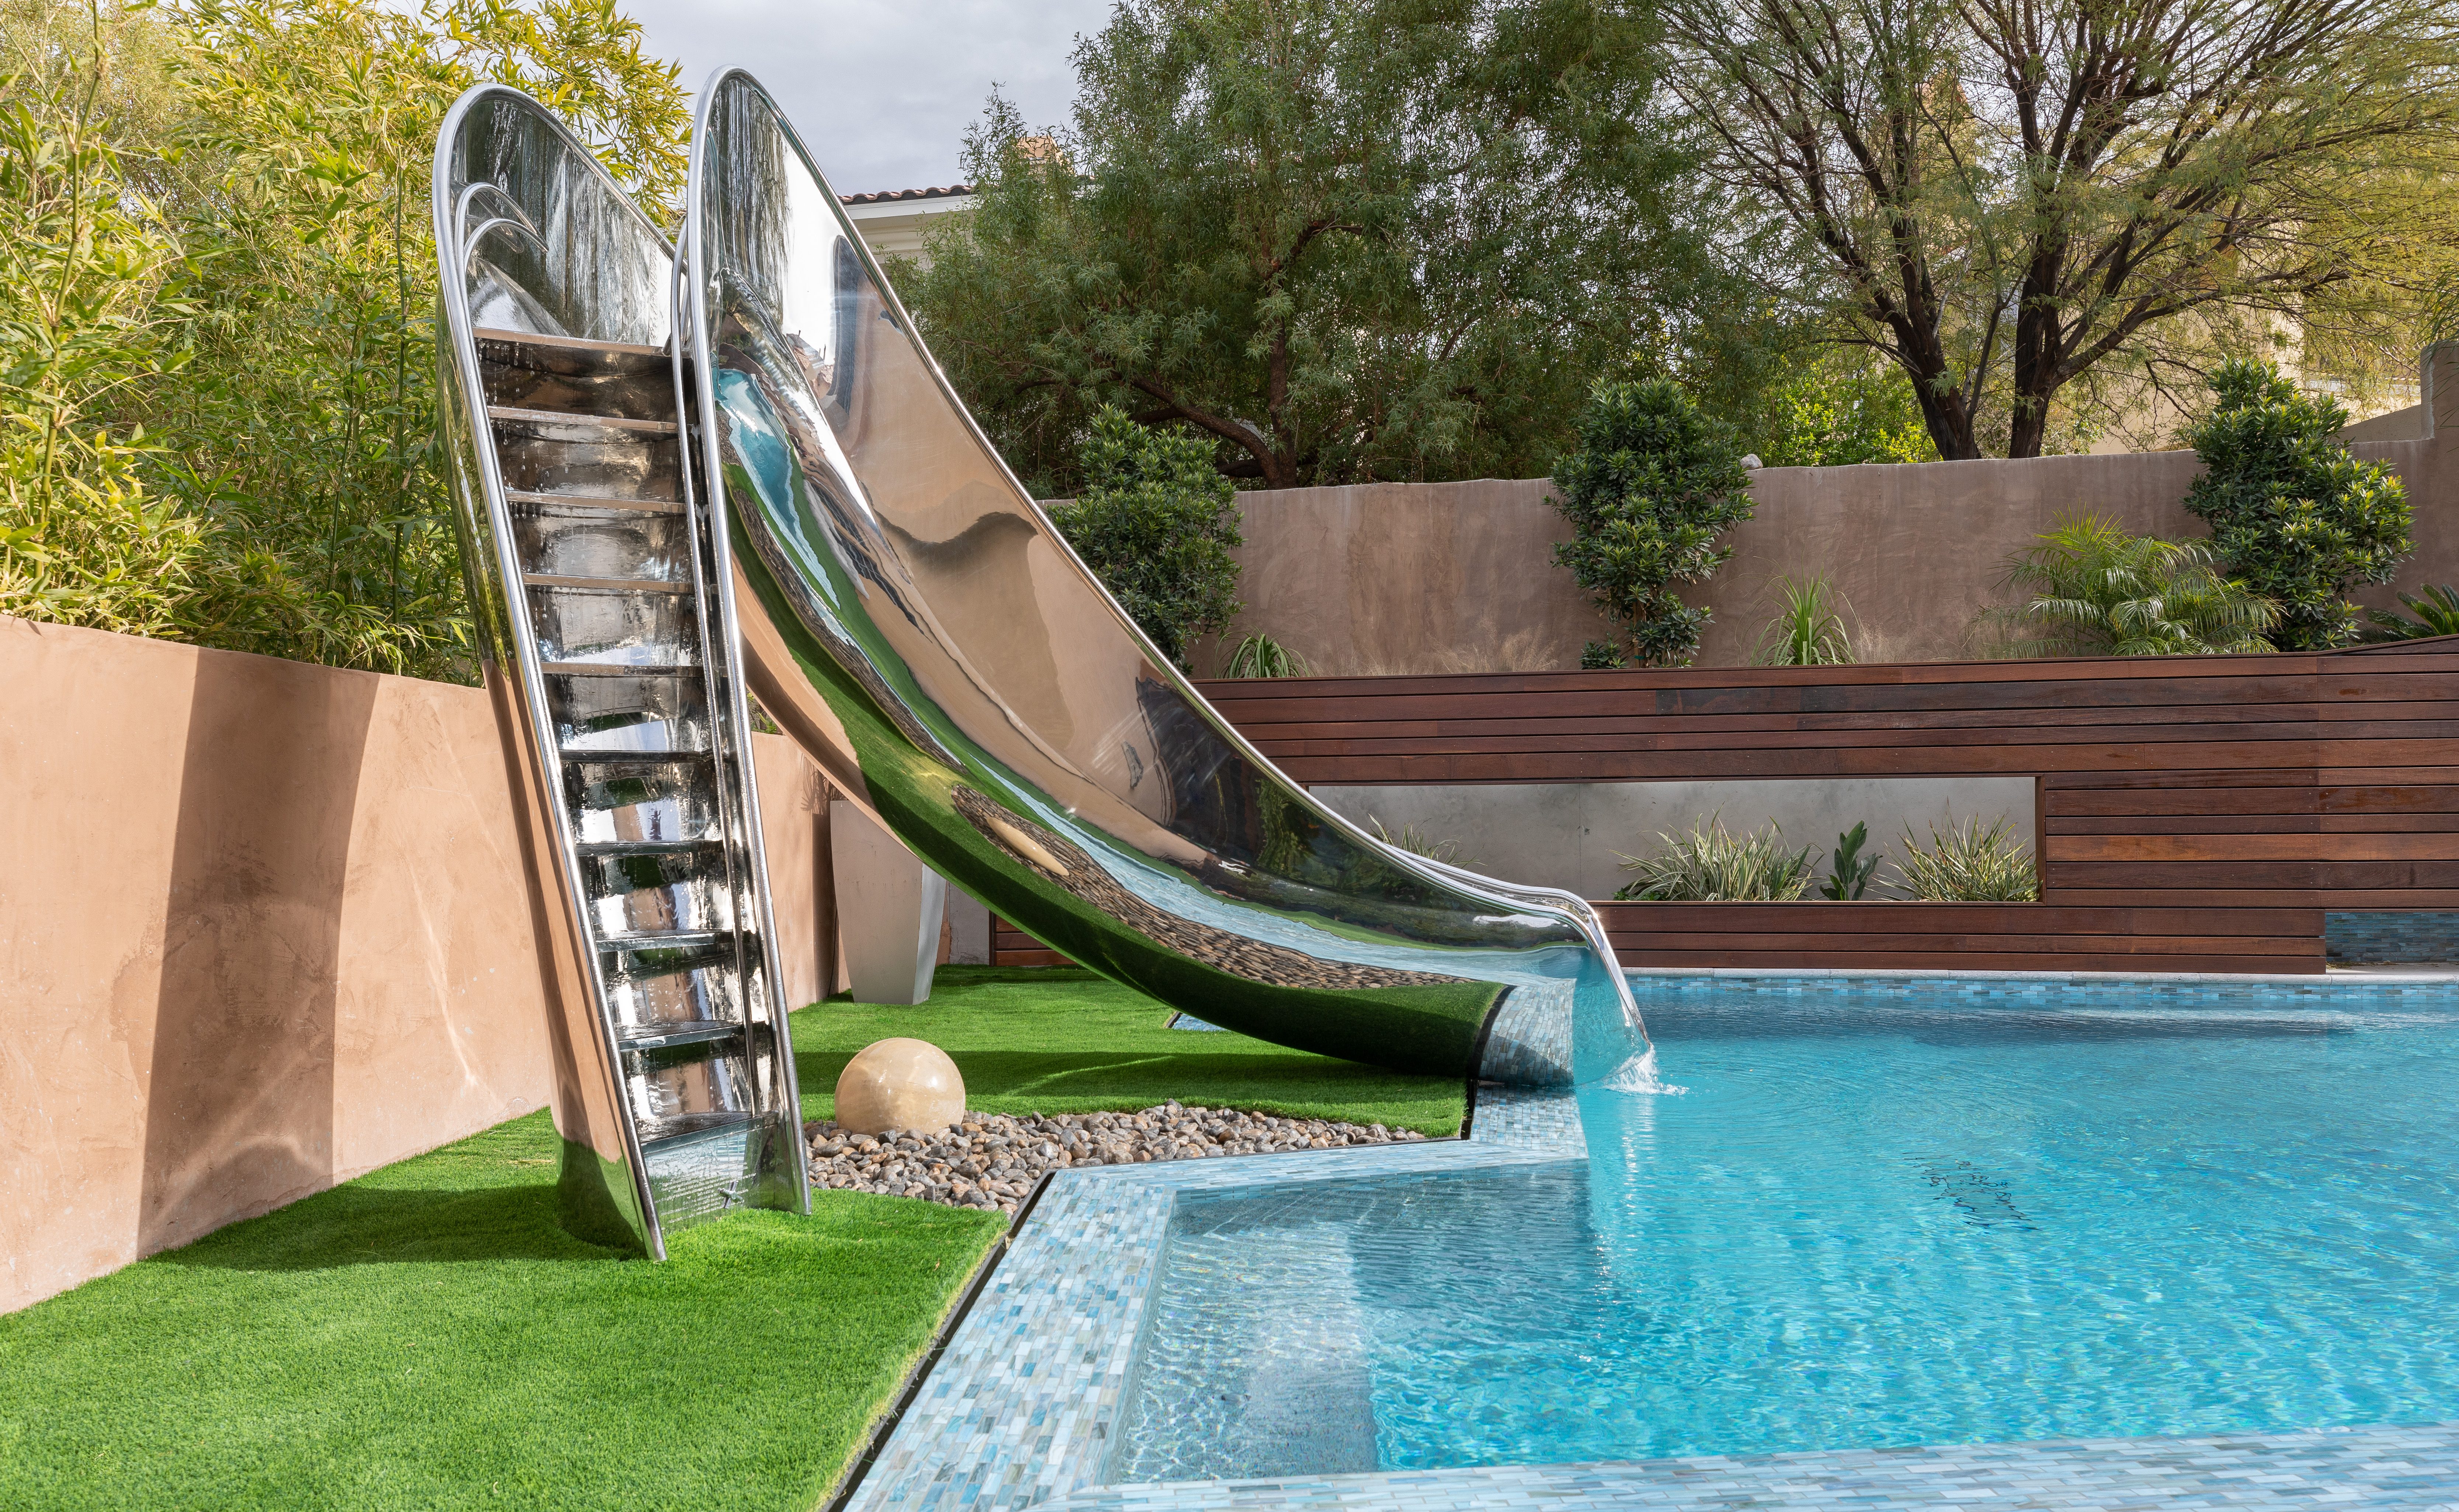 Step view of stainless steel pool slide on astroturf